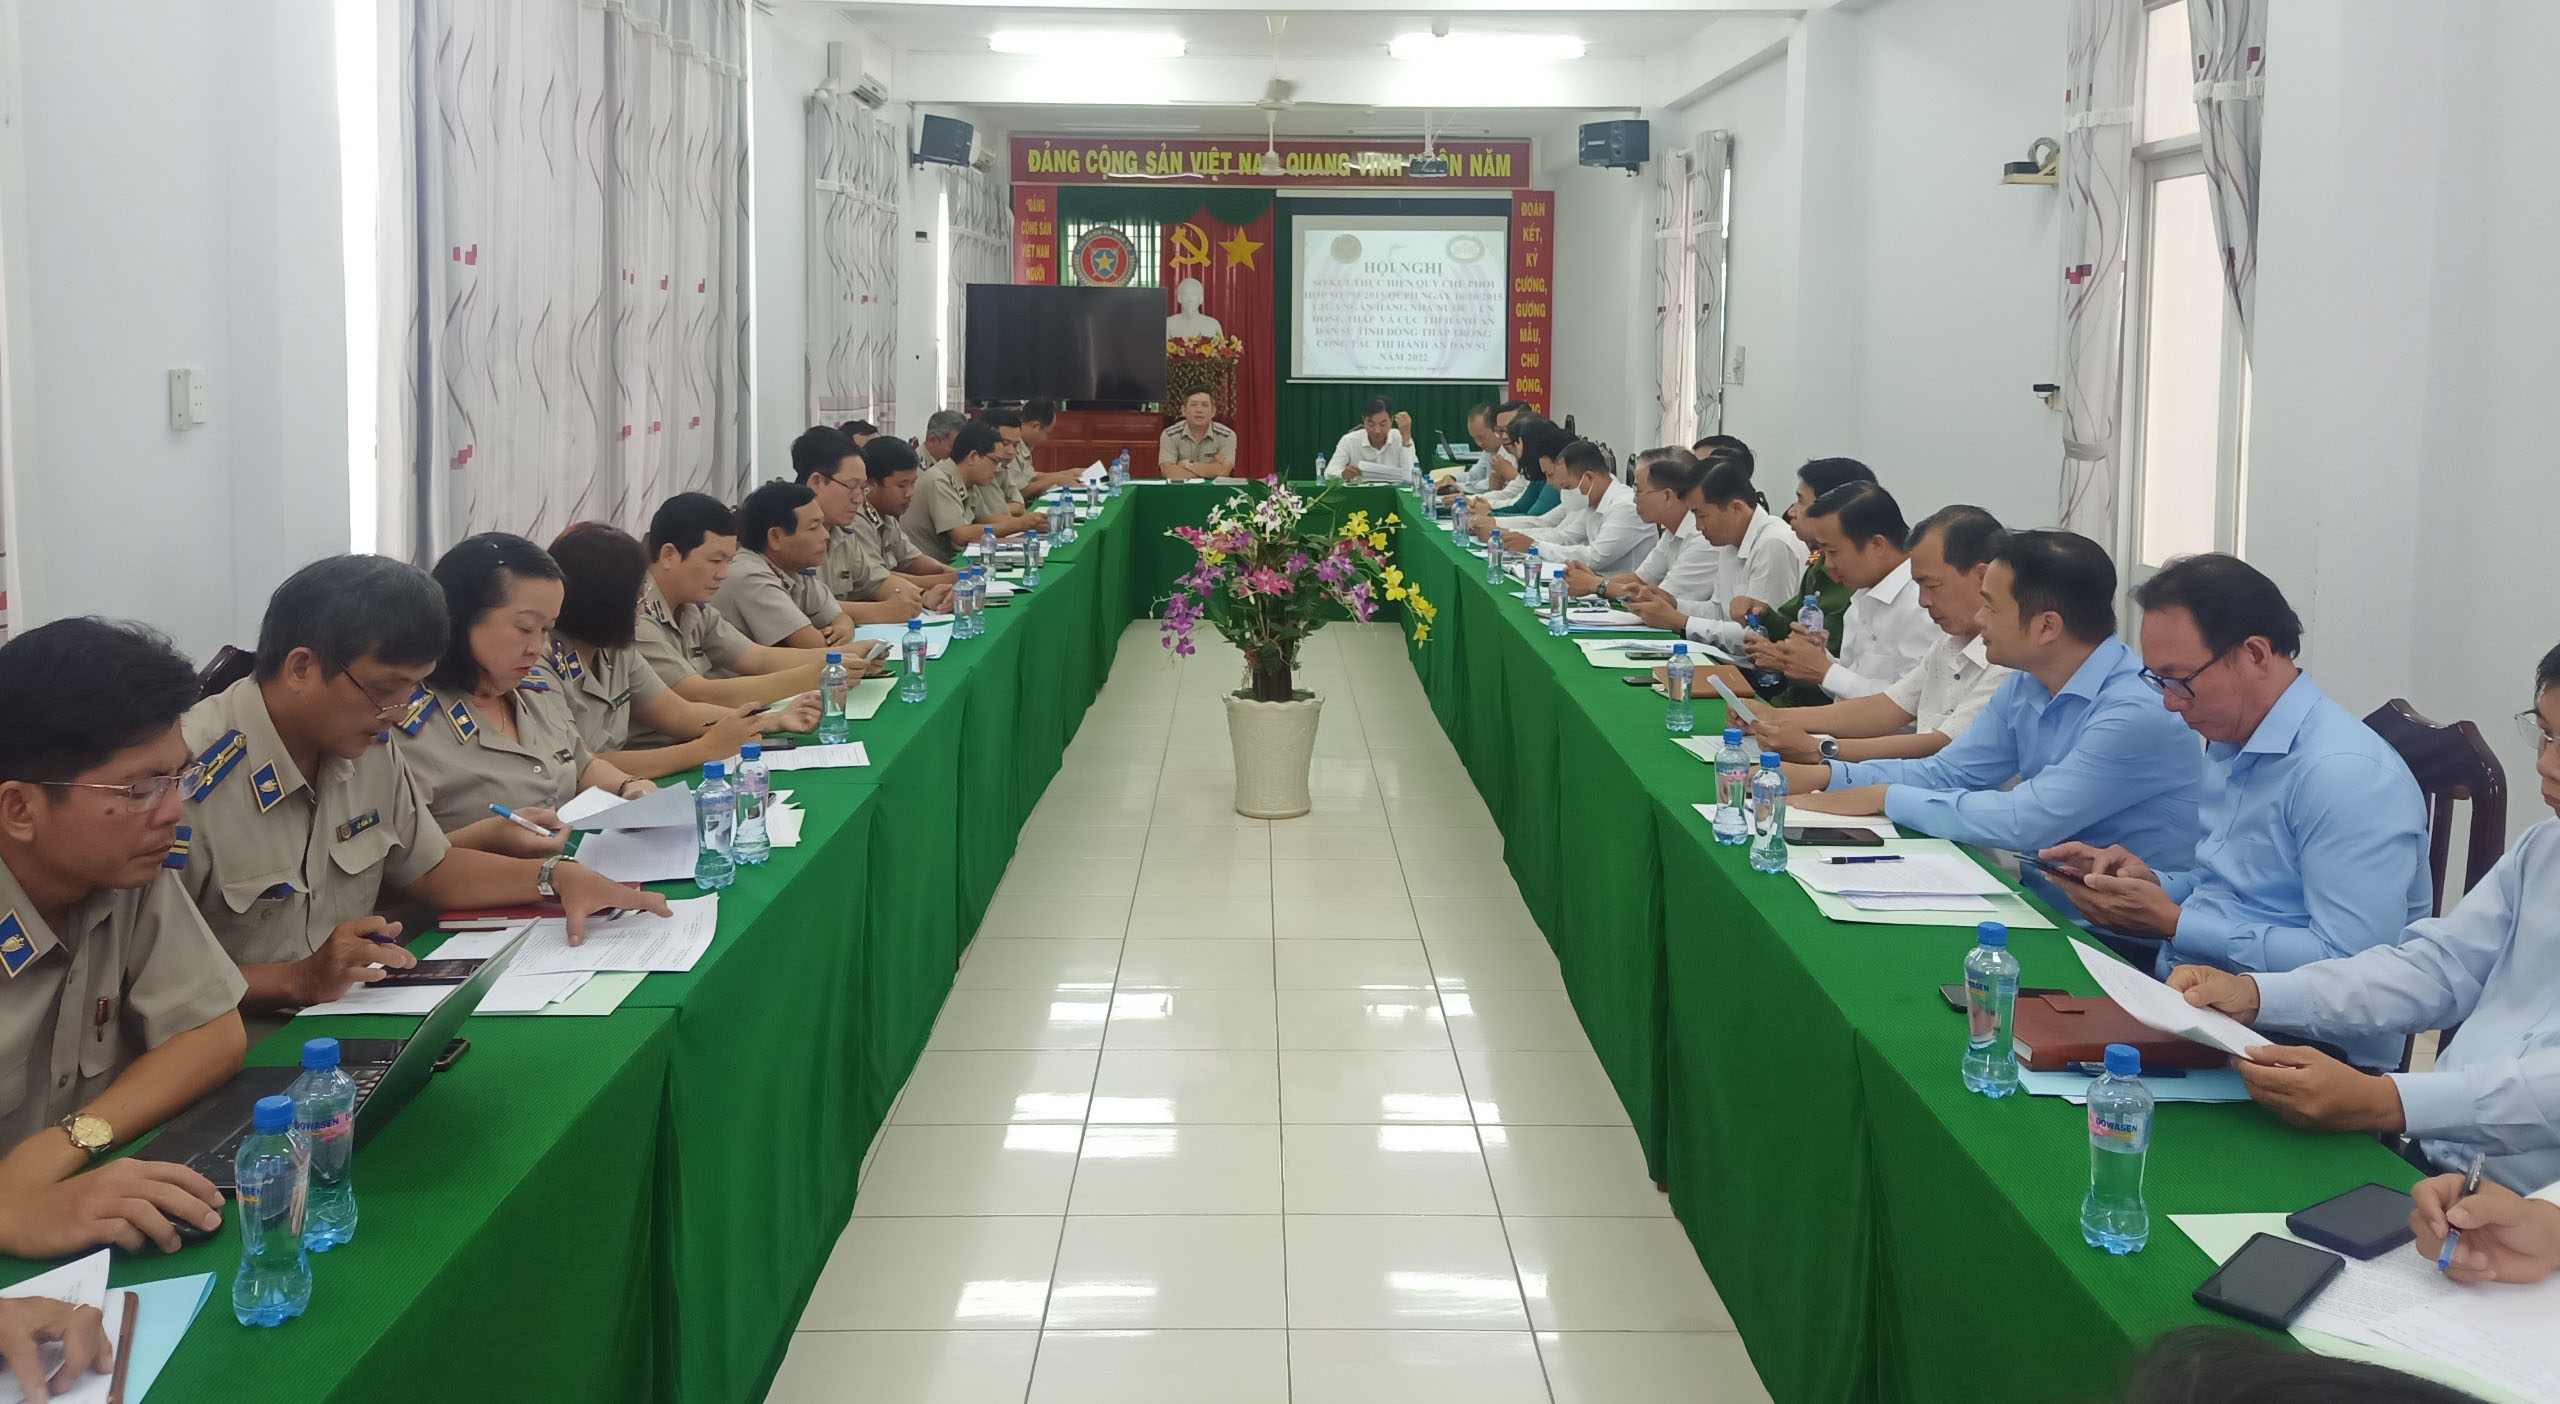 Hội nghị sơ kết thực hiện Quy chế phối hợp số 791/2015/QCPH ngày 16/10/2015 giữa Ngân hàng Nhà nước Việt Nam - Chi nhánh tỉnh Đồng Tháp và Cục Thi hành án dân sự